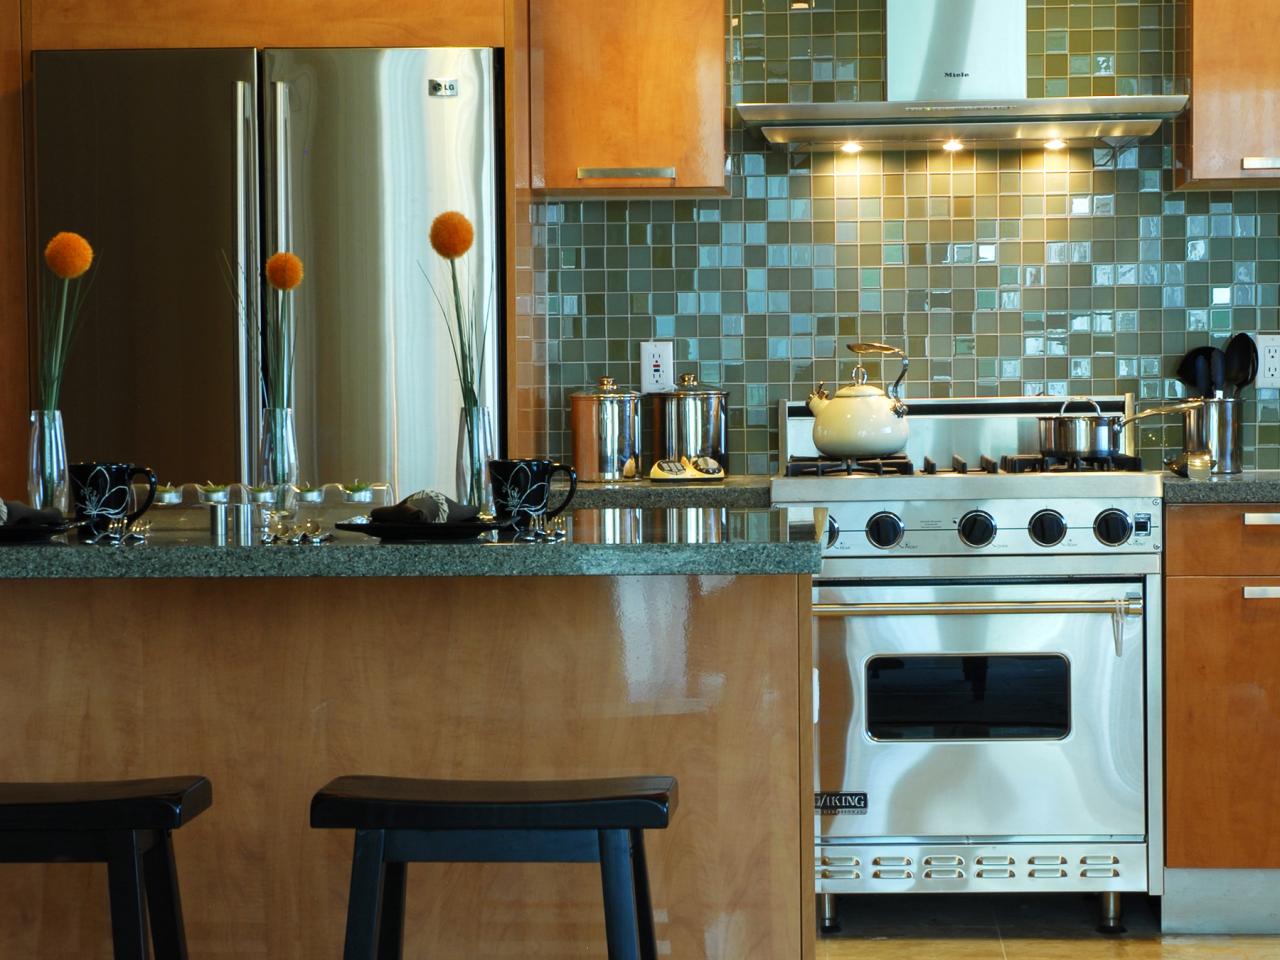 5 افكارعن تجديد ديكور المطبخ من ادوات المنزل بأقل تكلفة